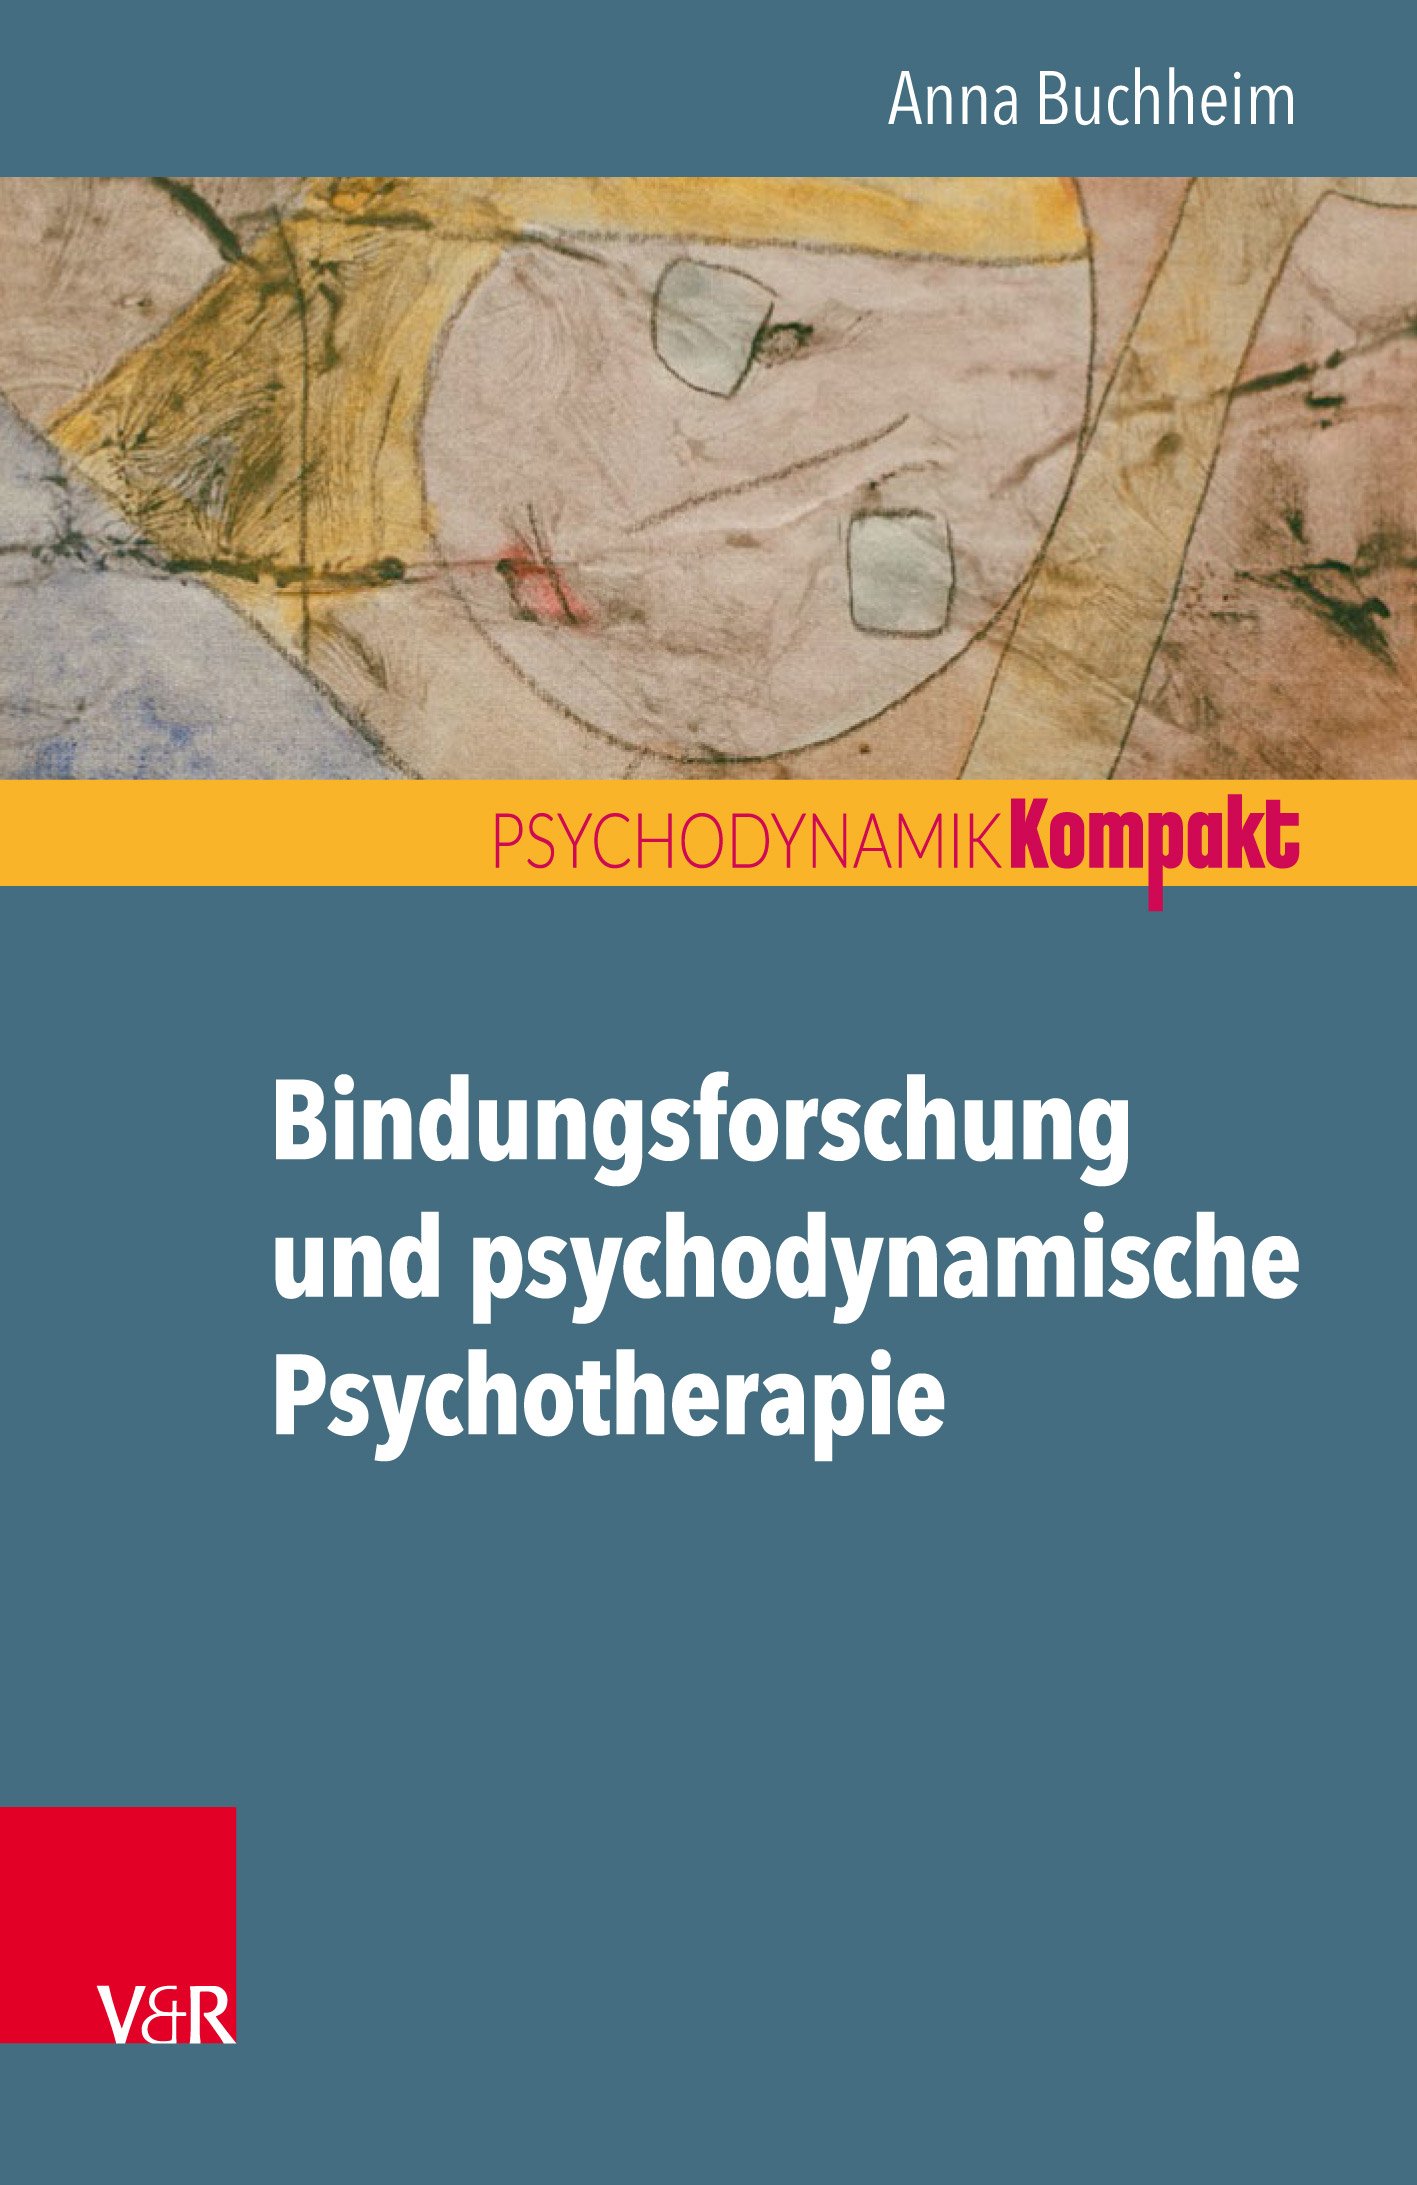 Bindungsforschung und psychodynamische Psychotherapie